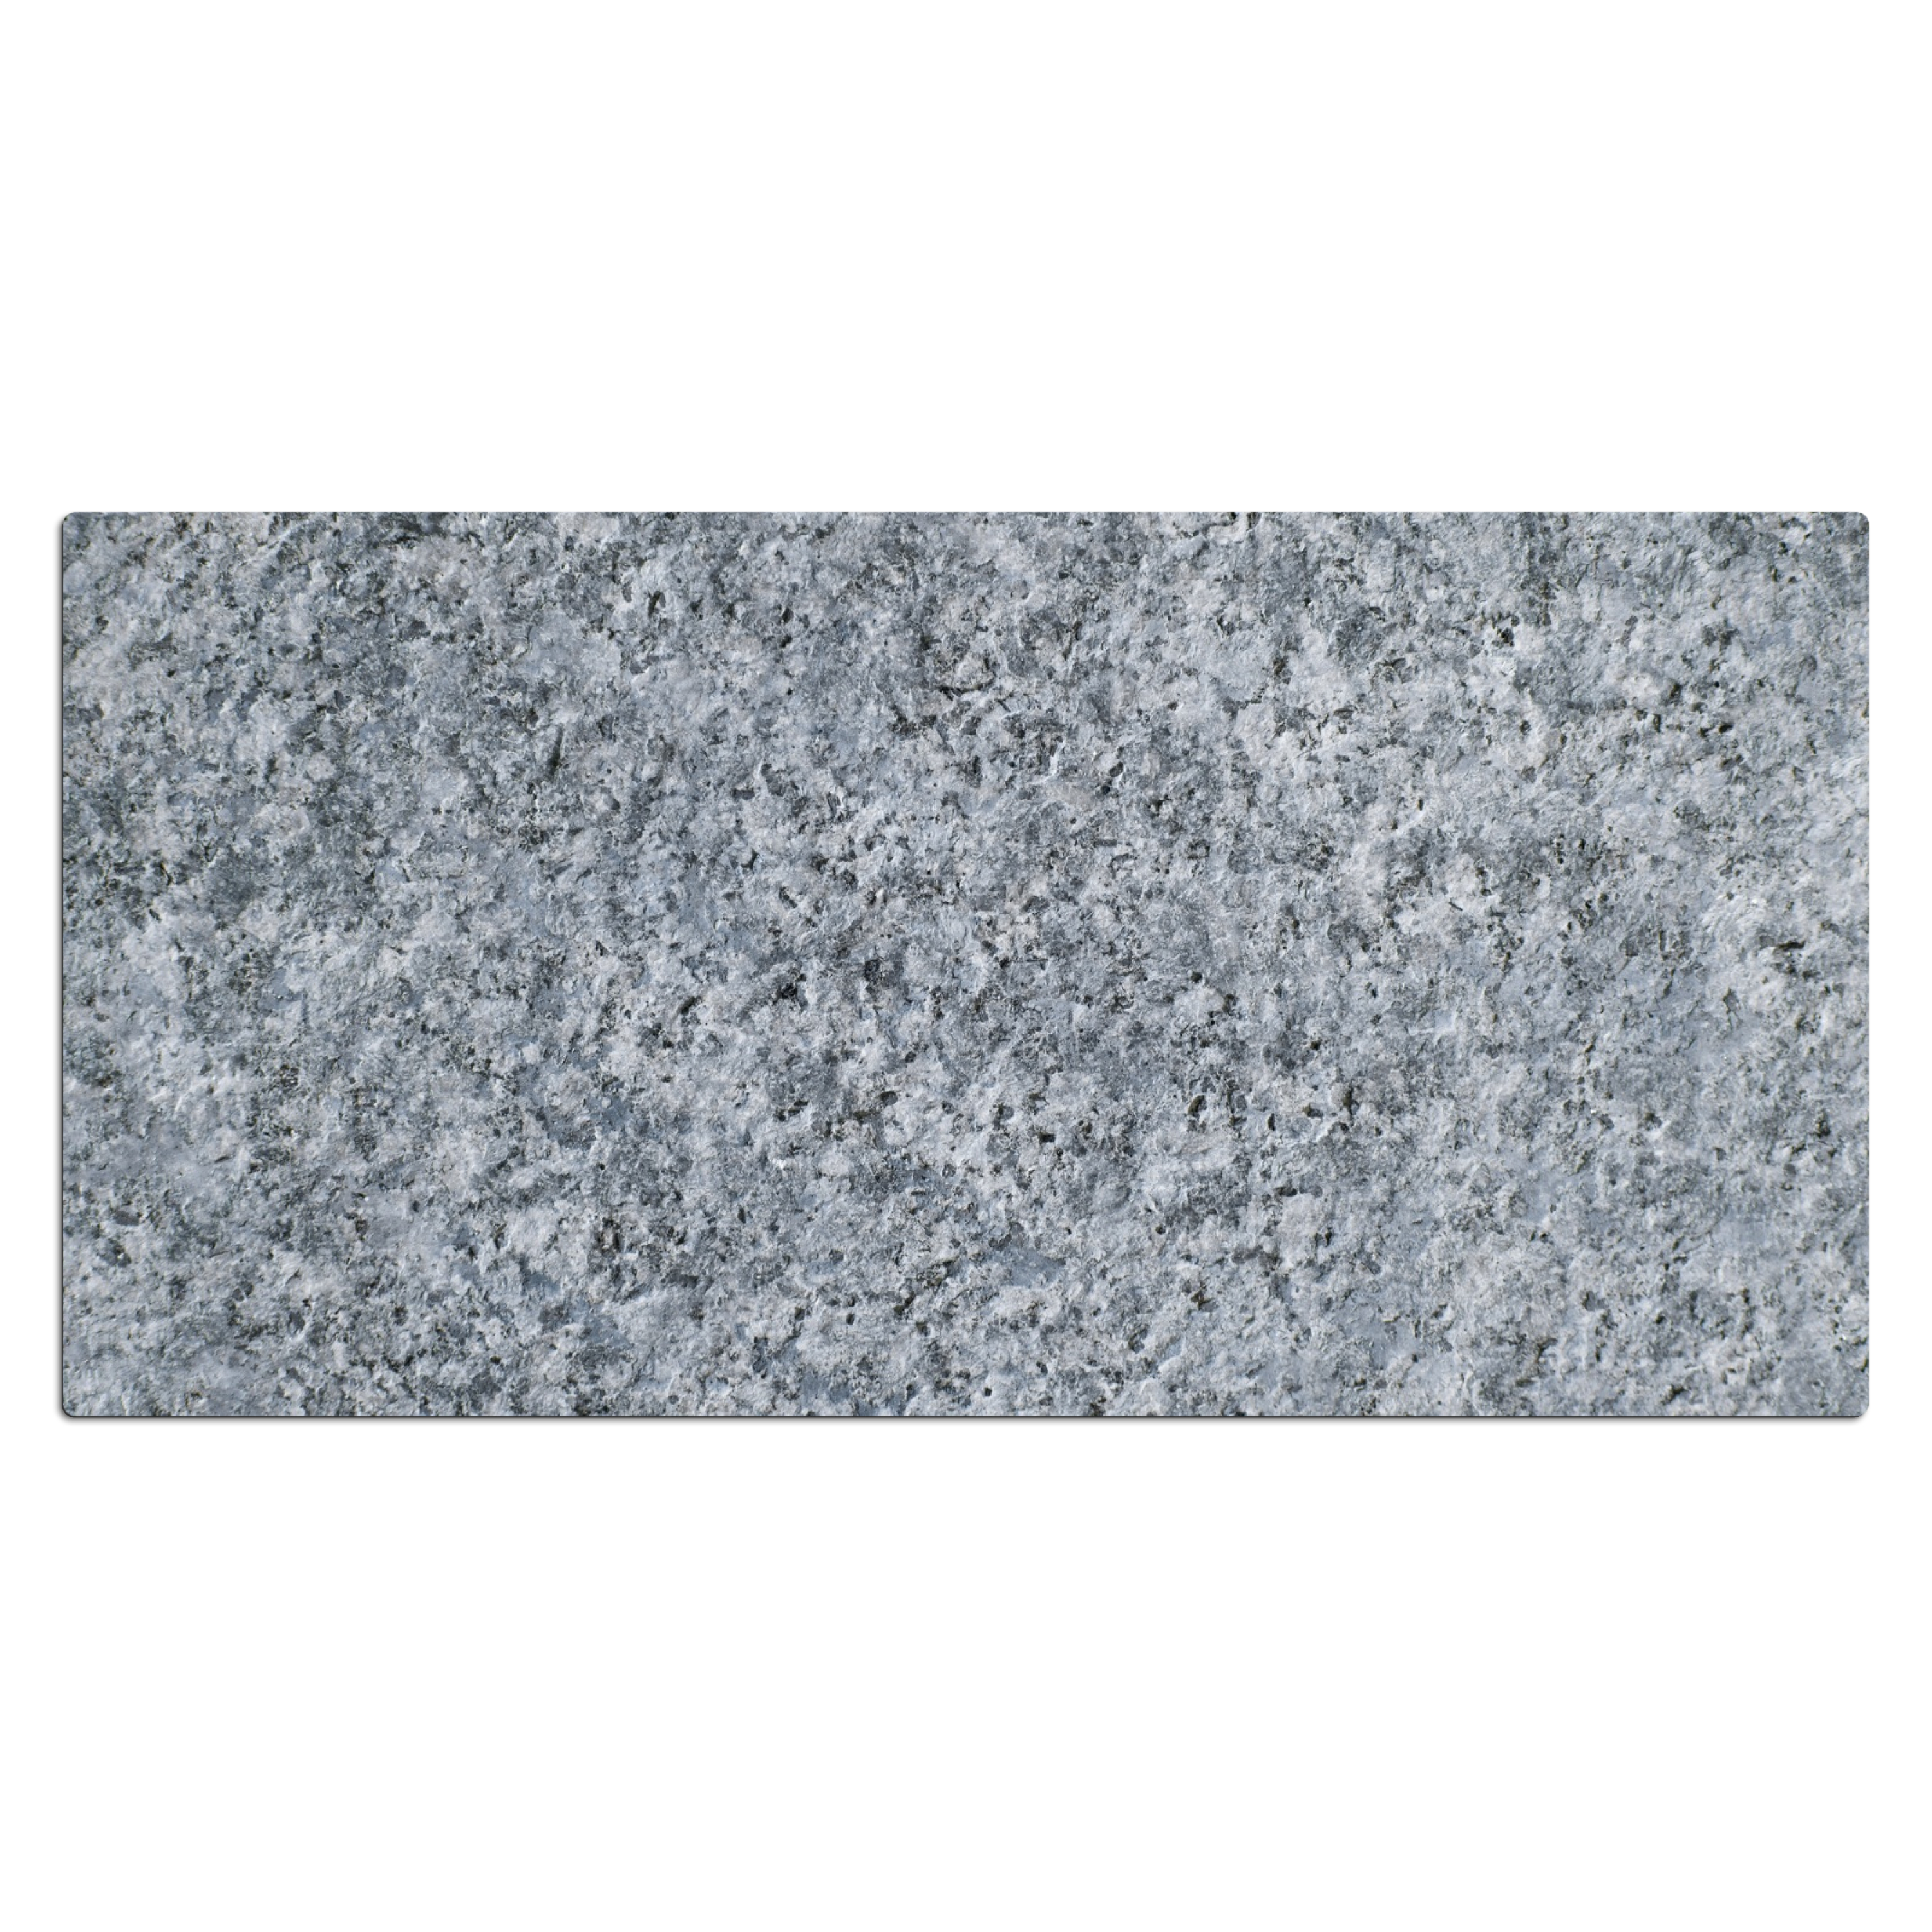 Schreibtischunterlage - Granit - Stein - Musterdesign Grau